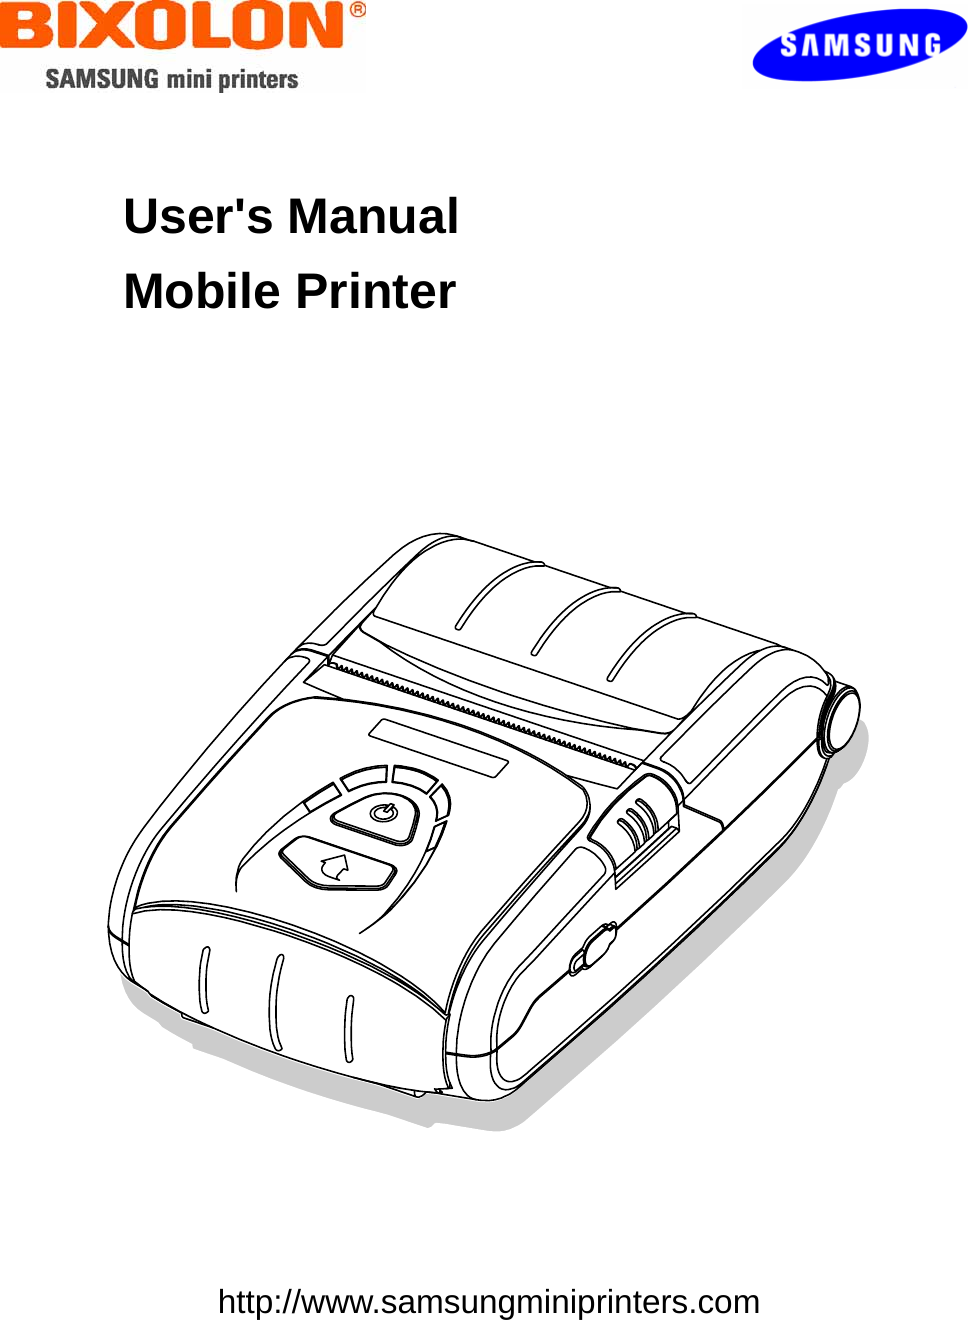    User&apos;s Manual Mobile Printer        http://www.samsungminiprinters.com  